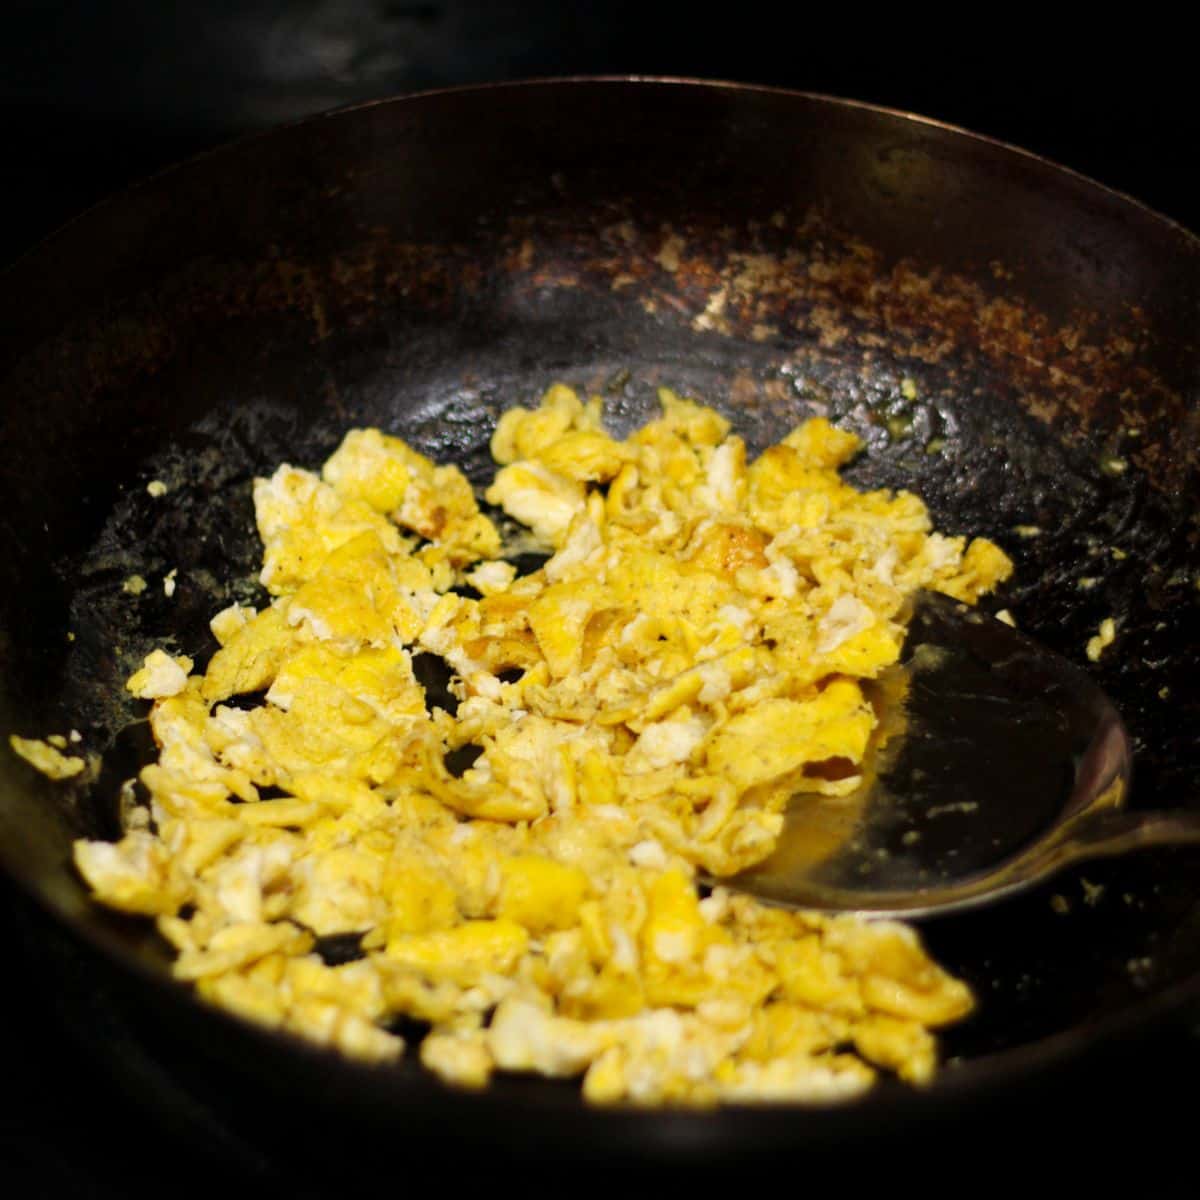 Scrambling eggs in a wok.